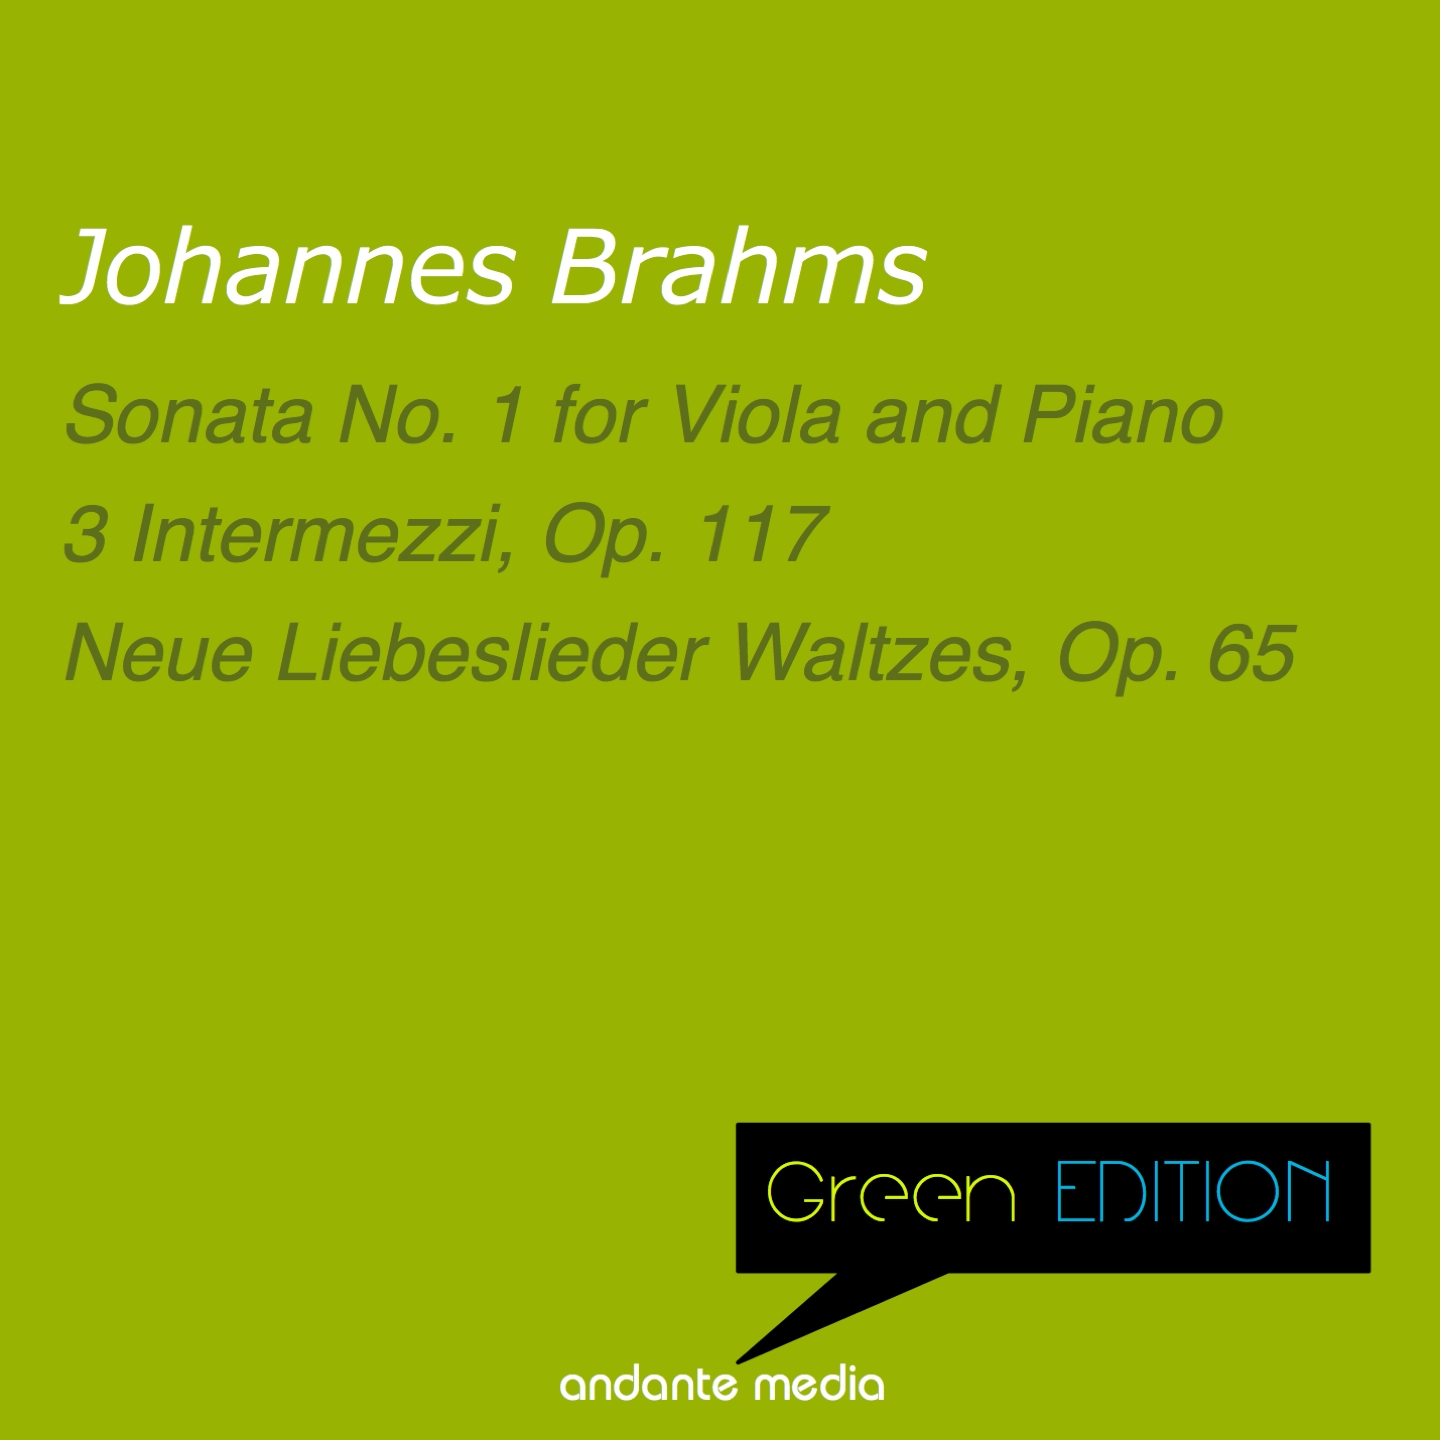 Neue Liebeslieder Waltzes, Op. 65: No. 8, Weiche Gr ser im Revier